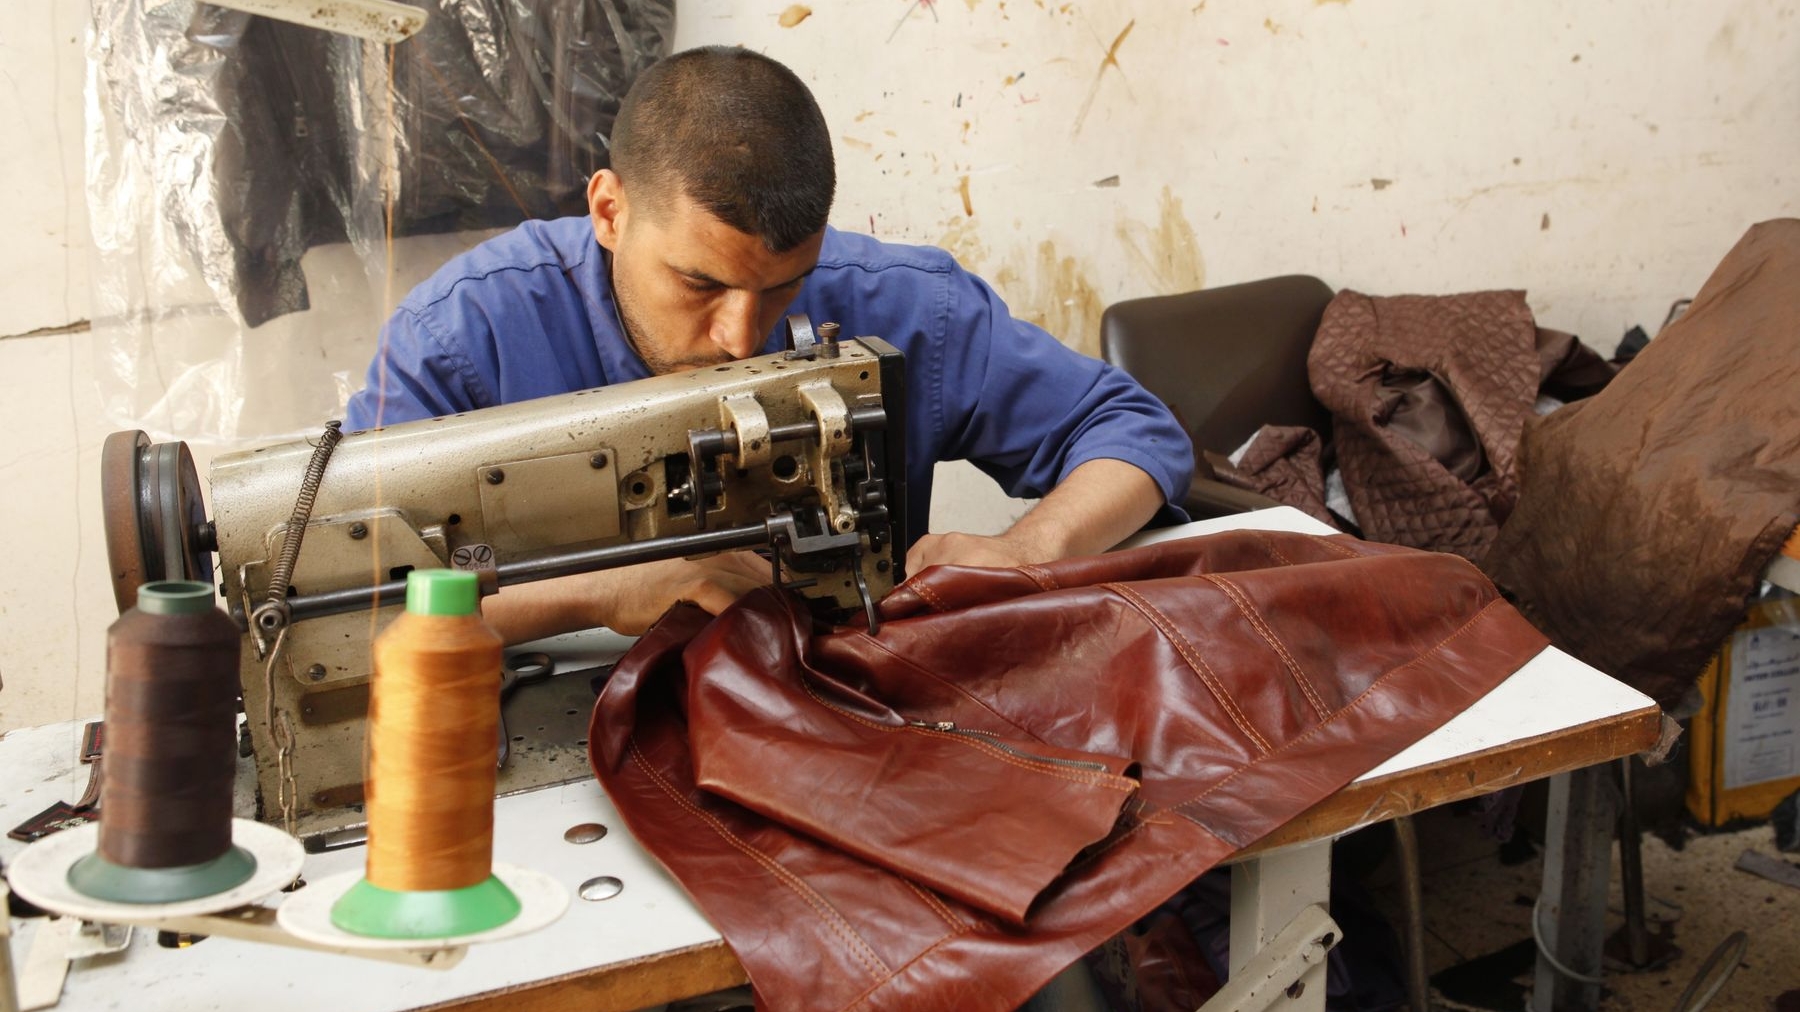 Dans la pure tradition du cousu main, cet artisan du cuir réalise ses articles comme des oeuvres d'art
